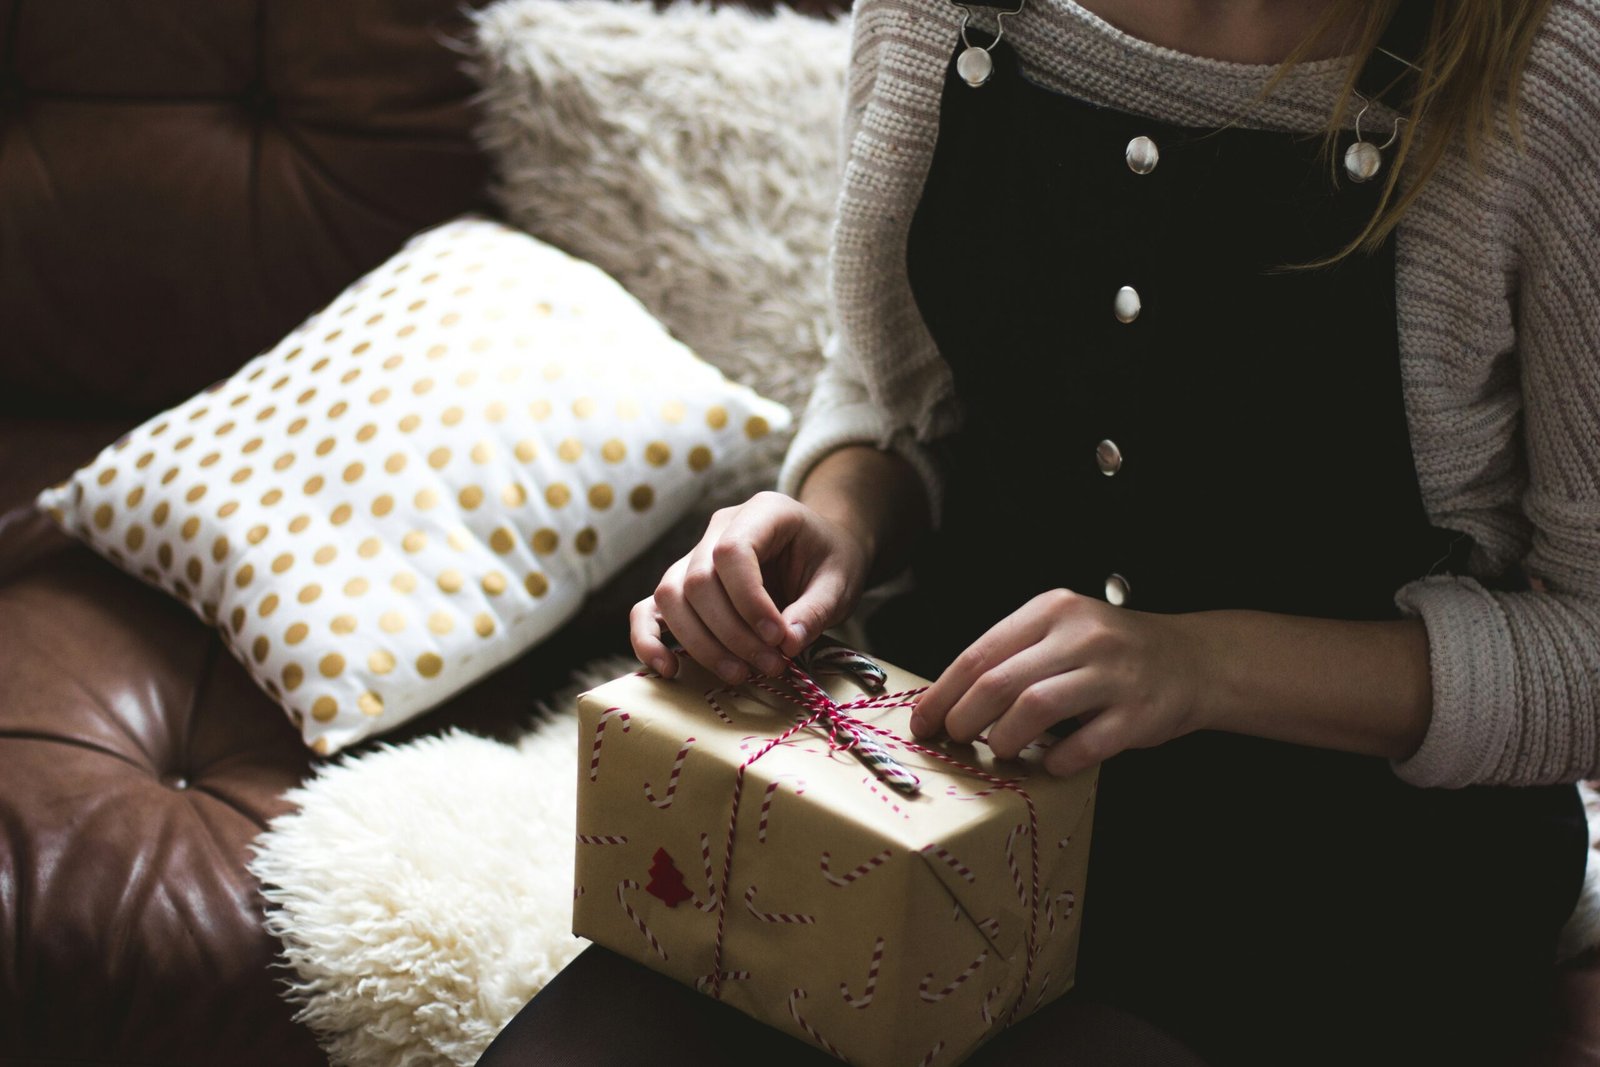 explorez des idées de cadeaux de dernière minute pour toutes les occasions et faites la journée de quelqu'un avec un cadeau attentionné et unique.